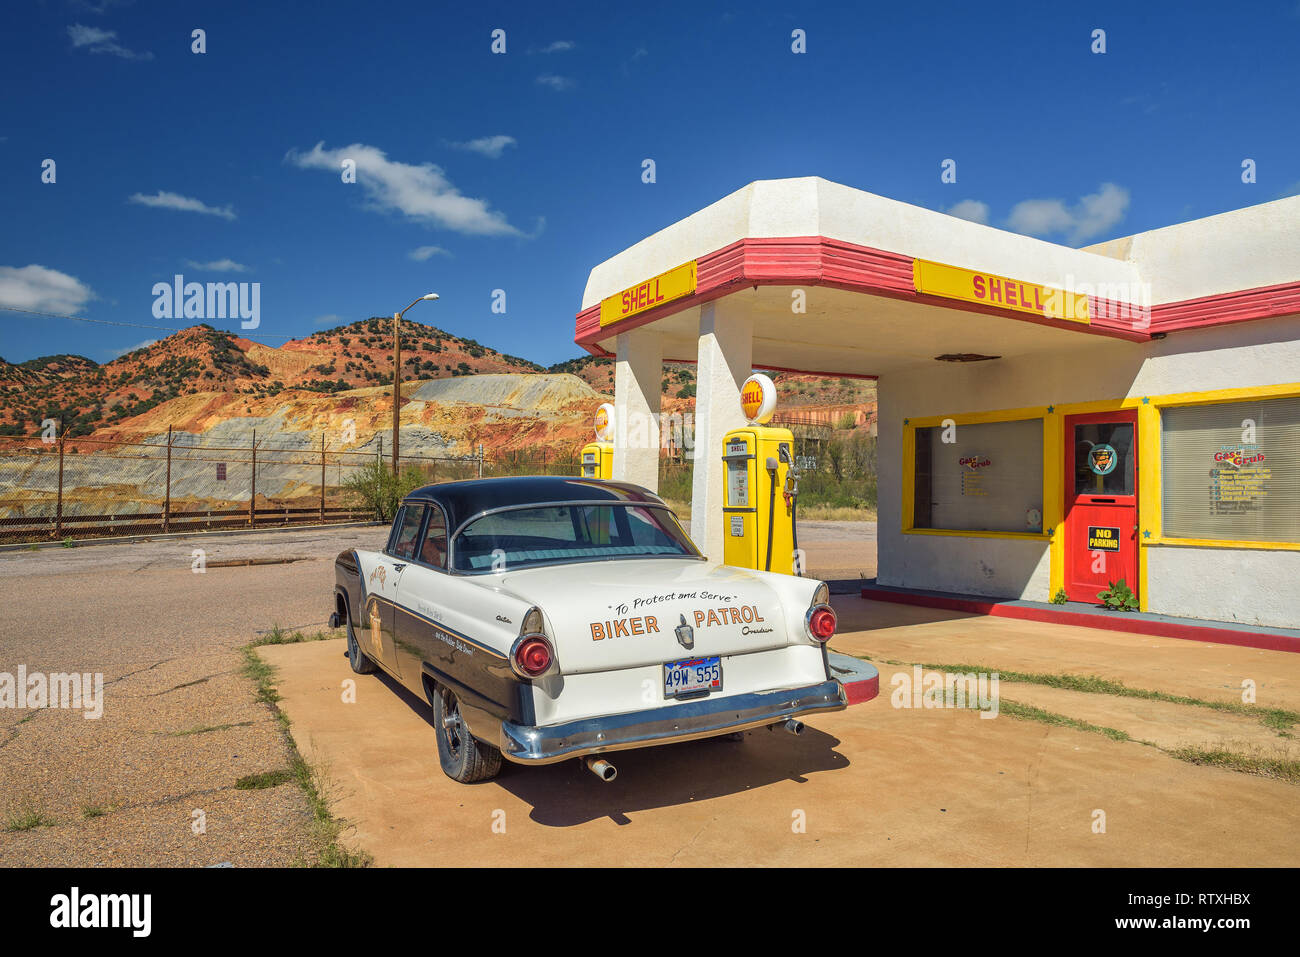 Storica stazione di rifornimento Shell nella miniera abbandonata città di Lowell, Arizona Foto Stock